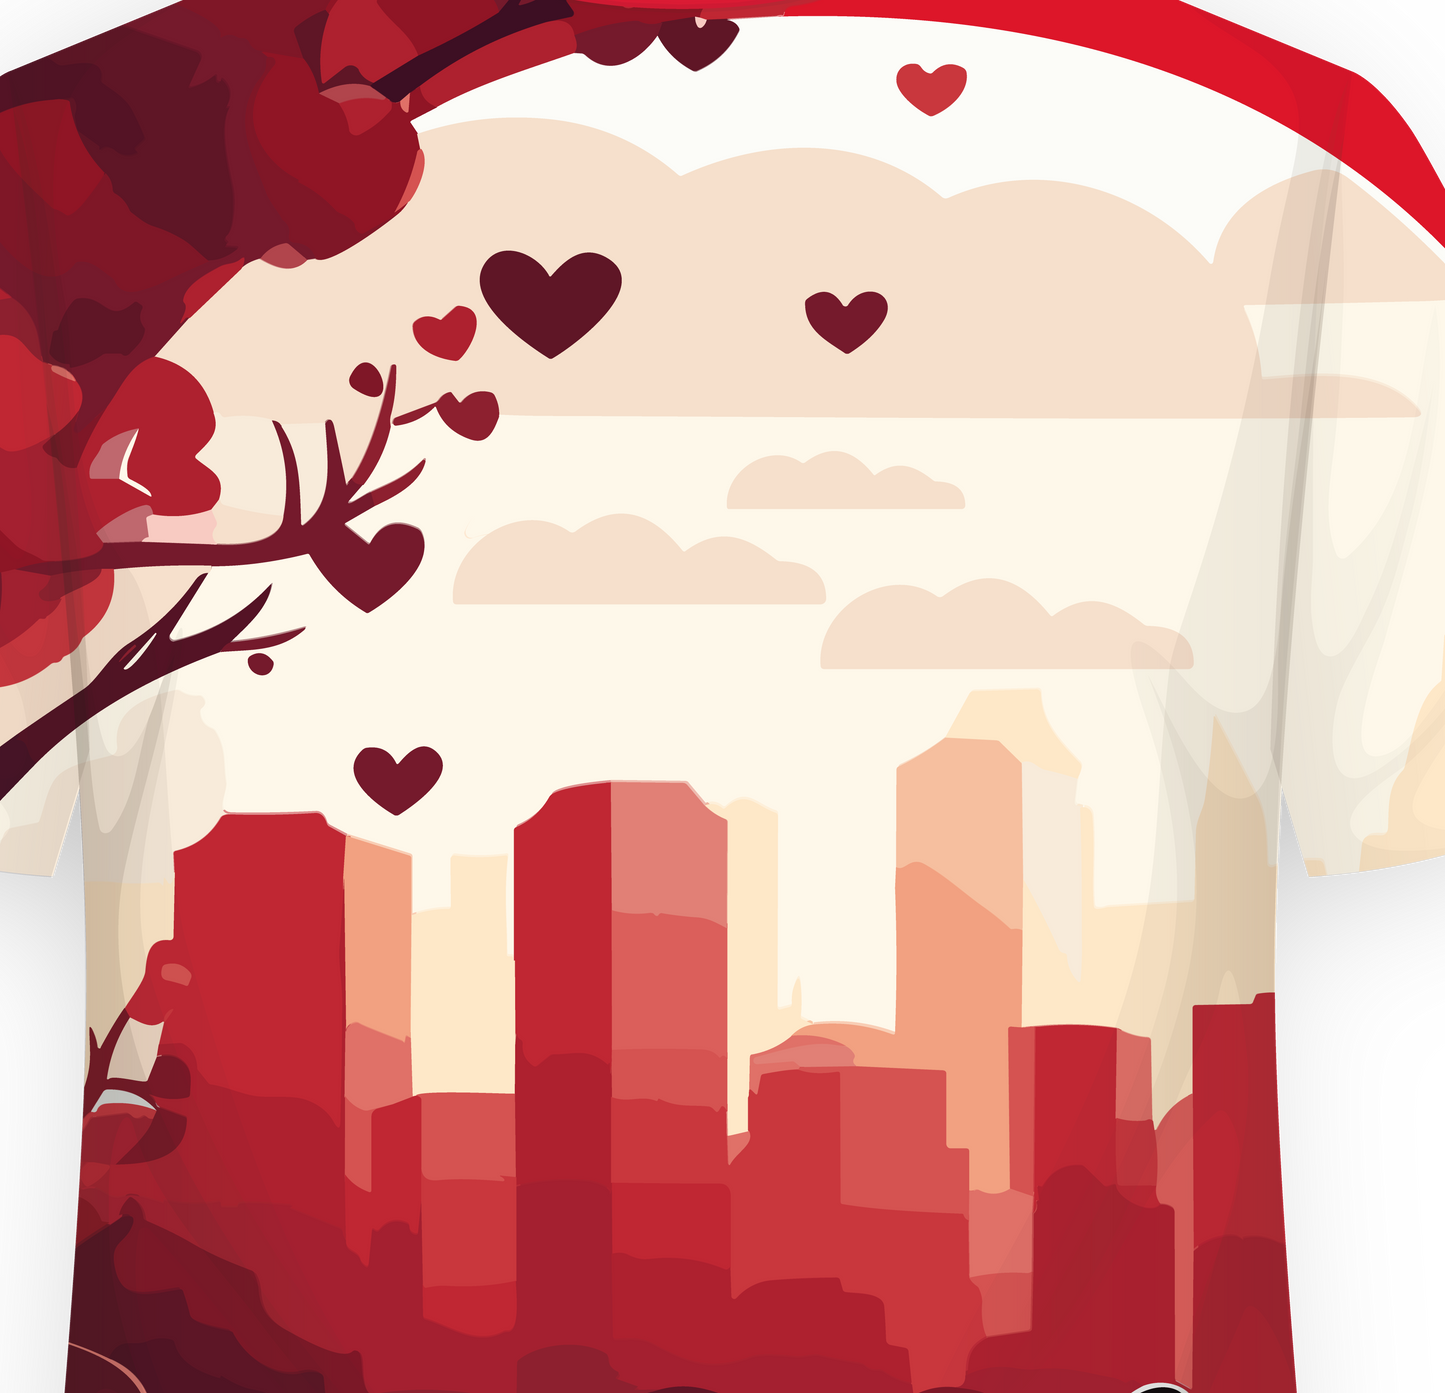 Shirt "Run For Hearts" (2023)